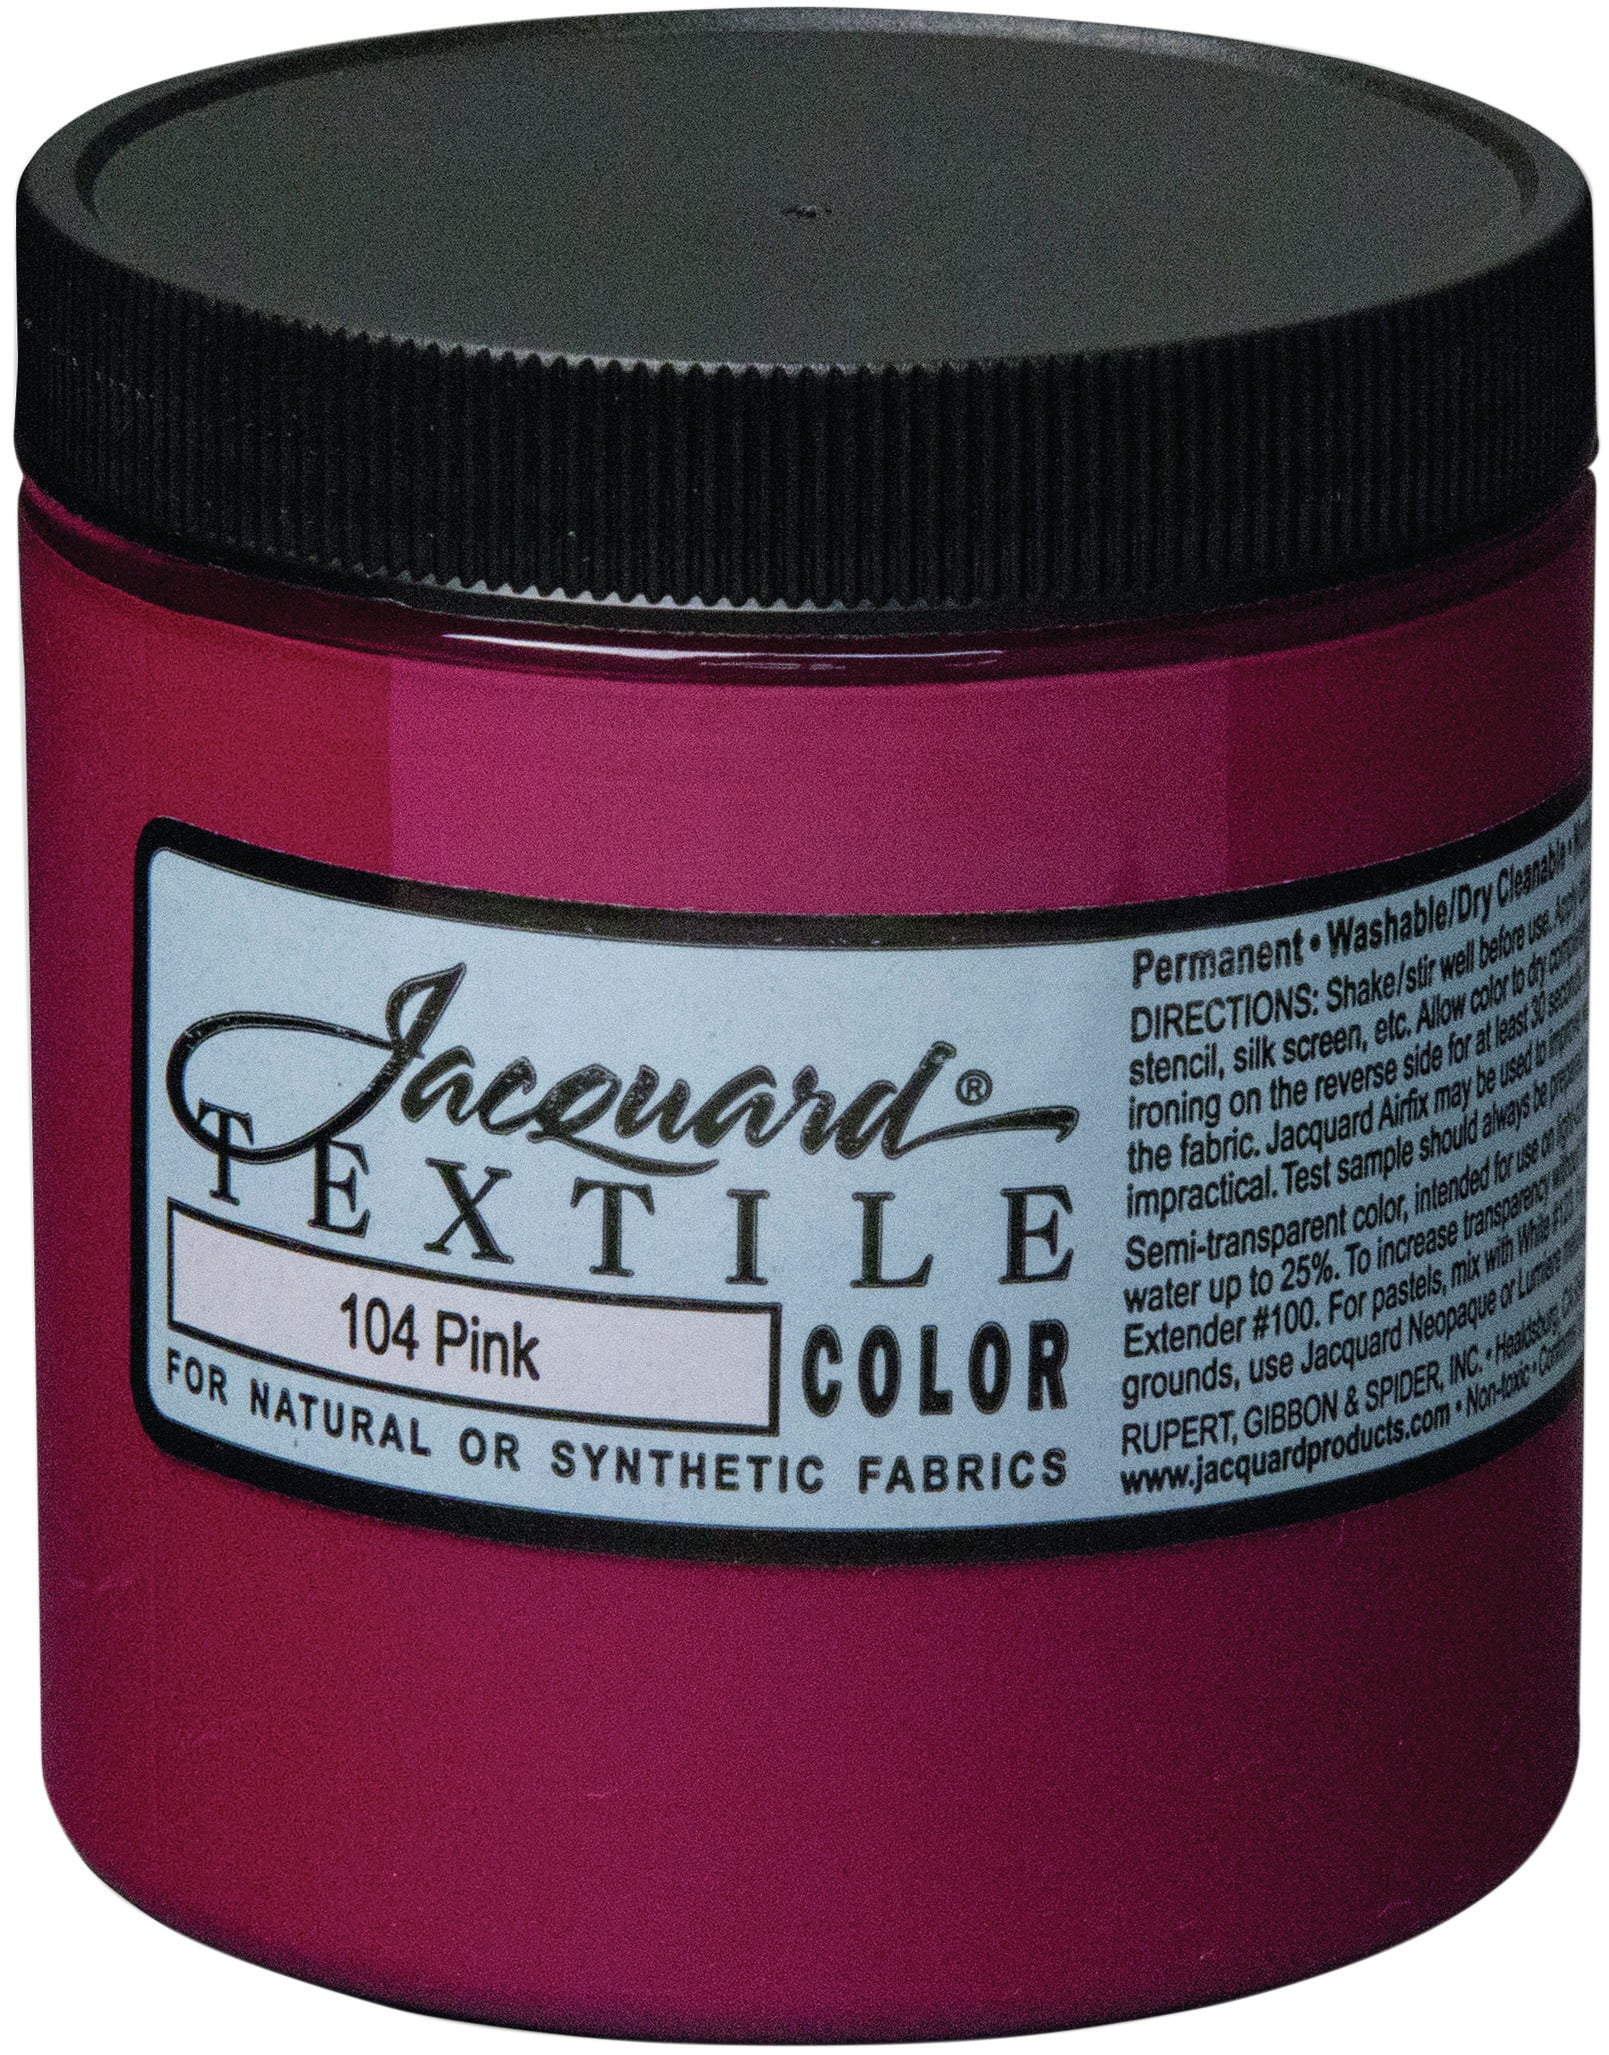 Jacquard Textile Color Fabric Paint 8oz-Pink - Walmart.com